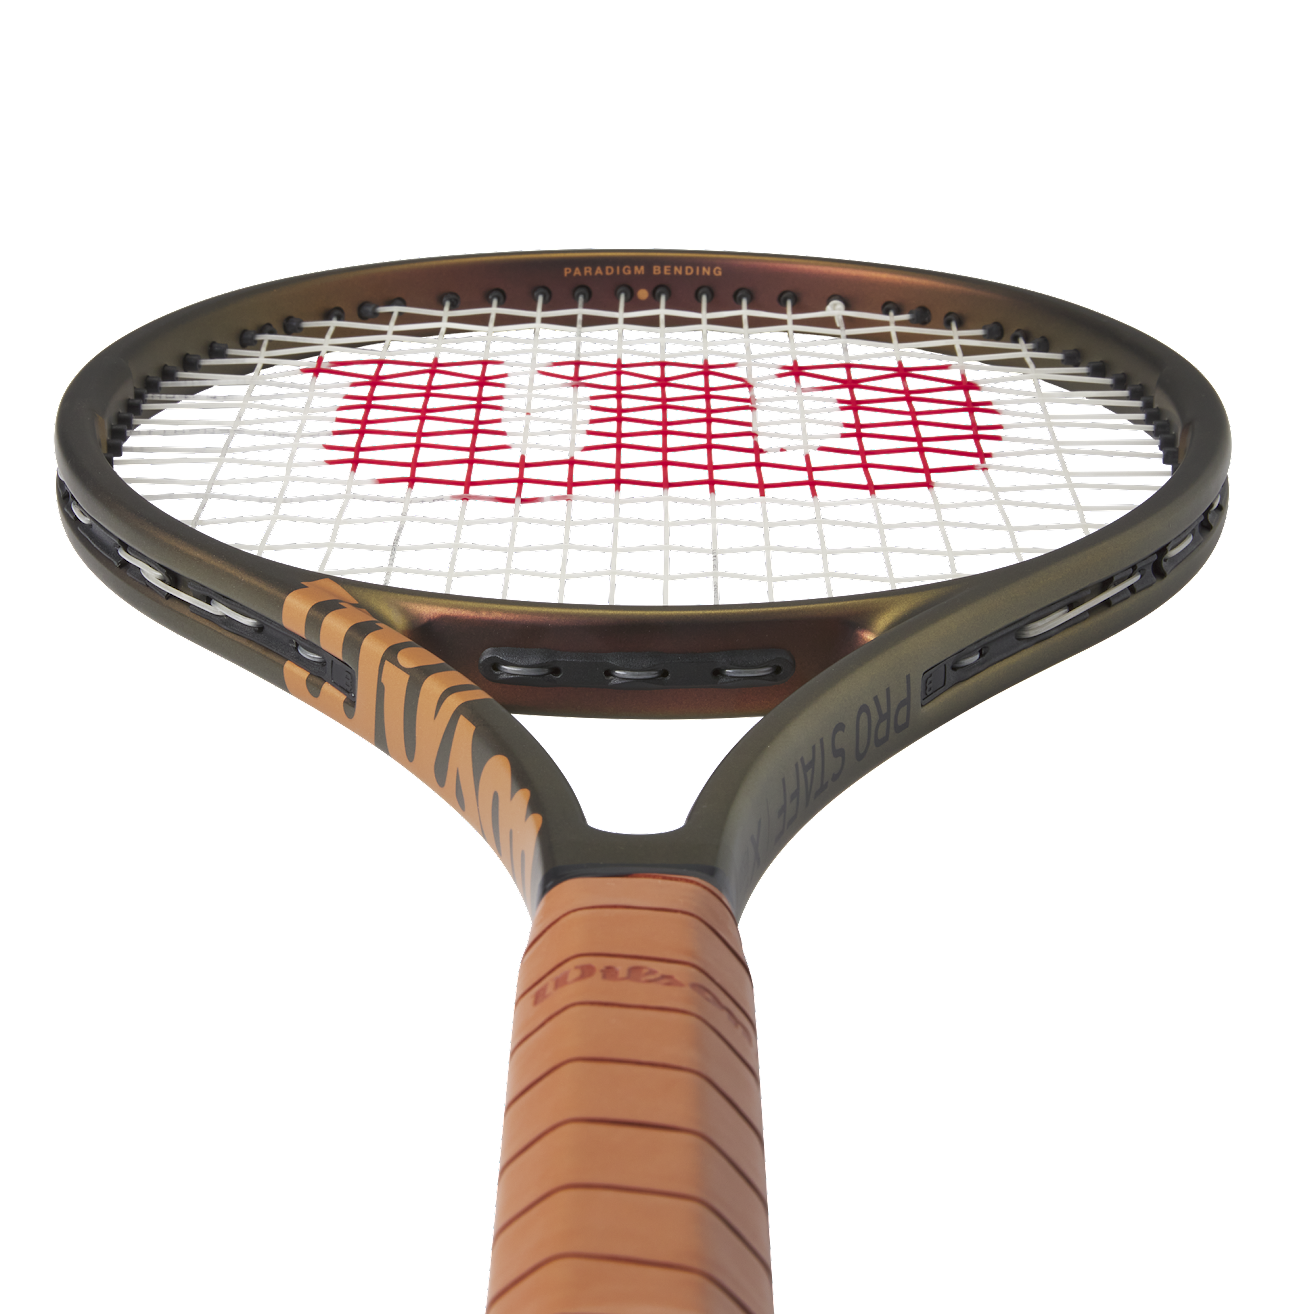 Tennis Racquet - Pro Staff X V14 - Frame